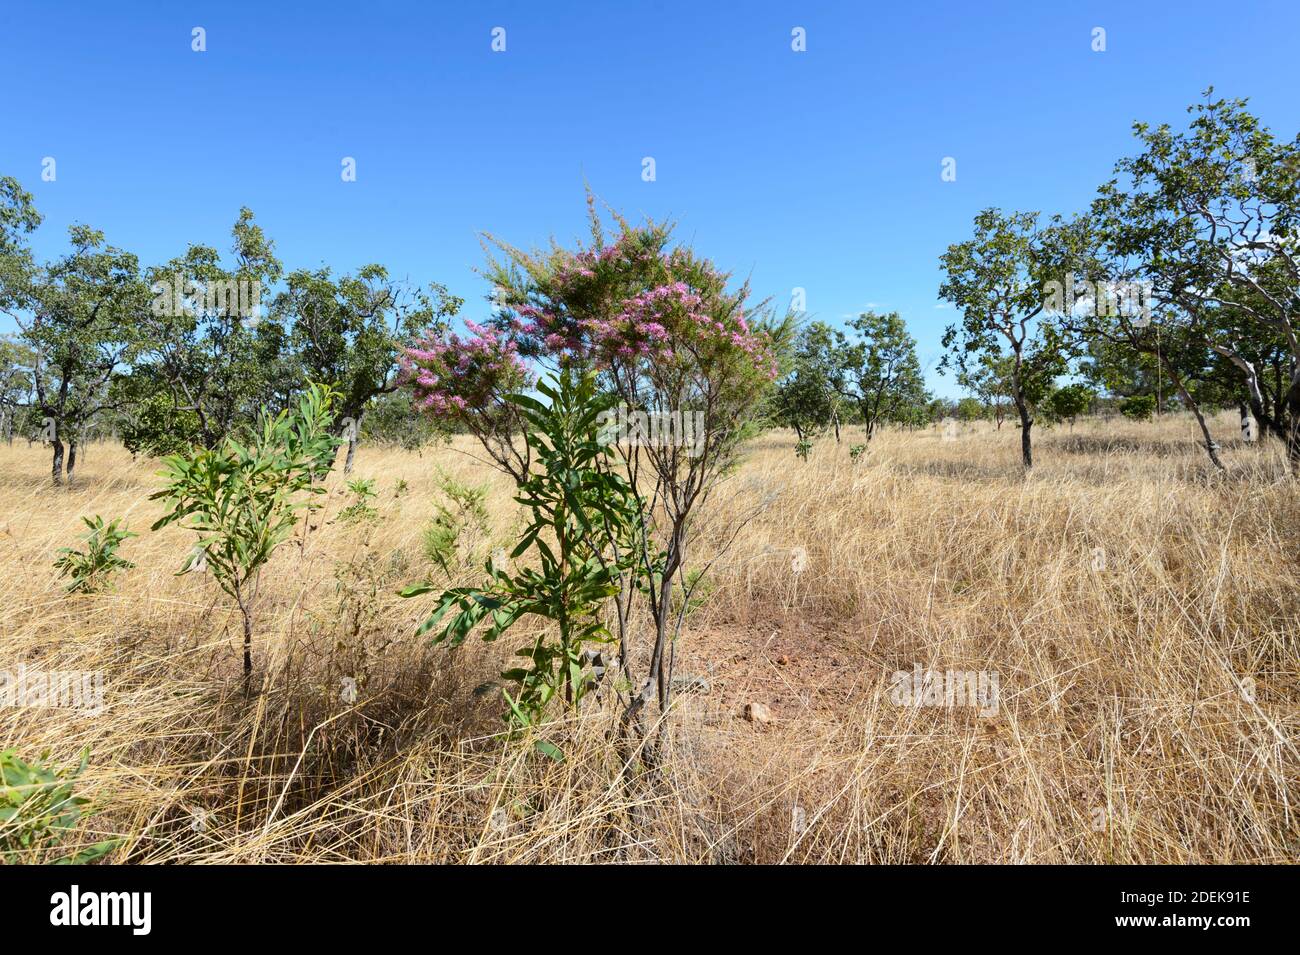 Vue panoramique sur la savane avec un Bush de dinde (Calytrix exanderata) et des herbes jaunes, près de Pine Creek, territoire du Nord, territoire du Nord, Australie Banque D'Images